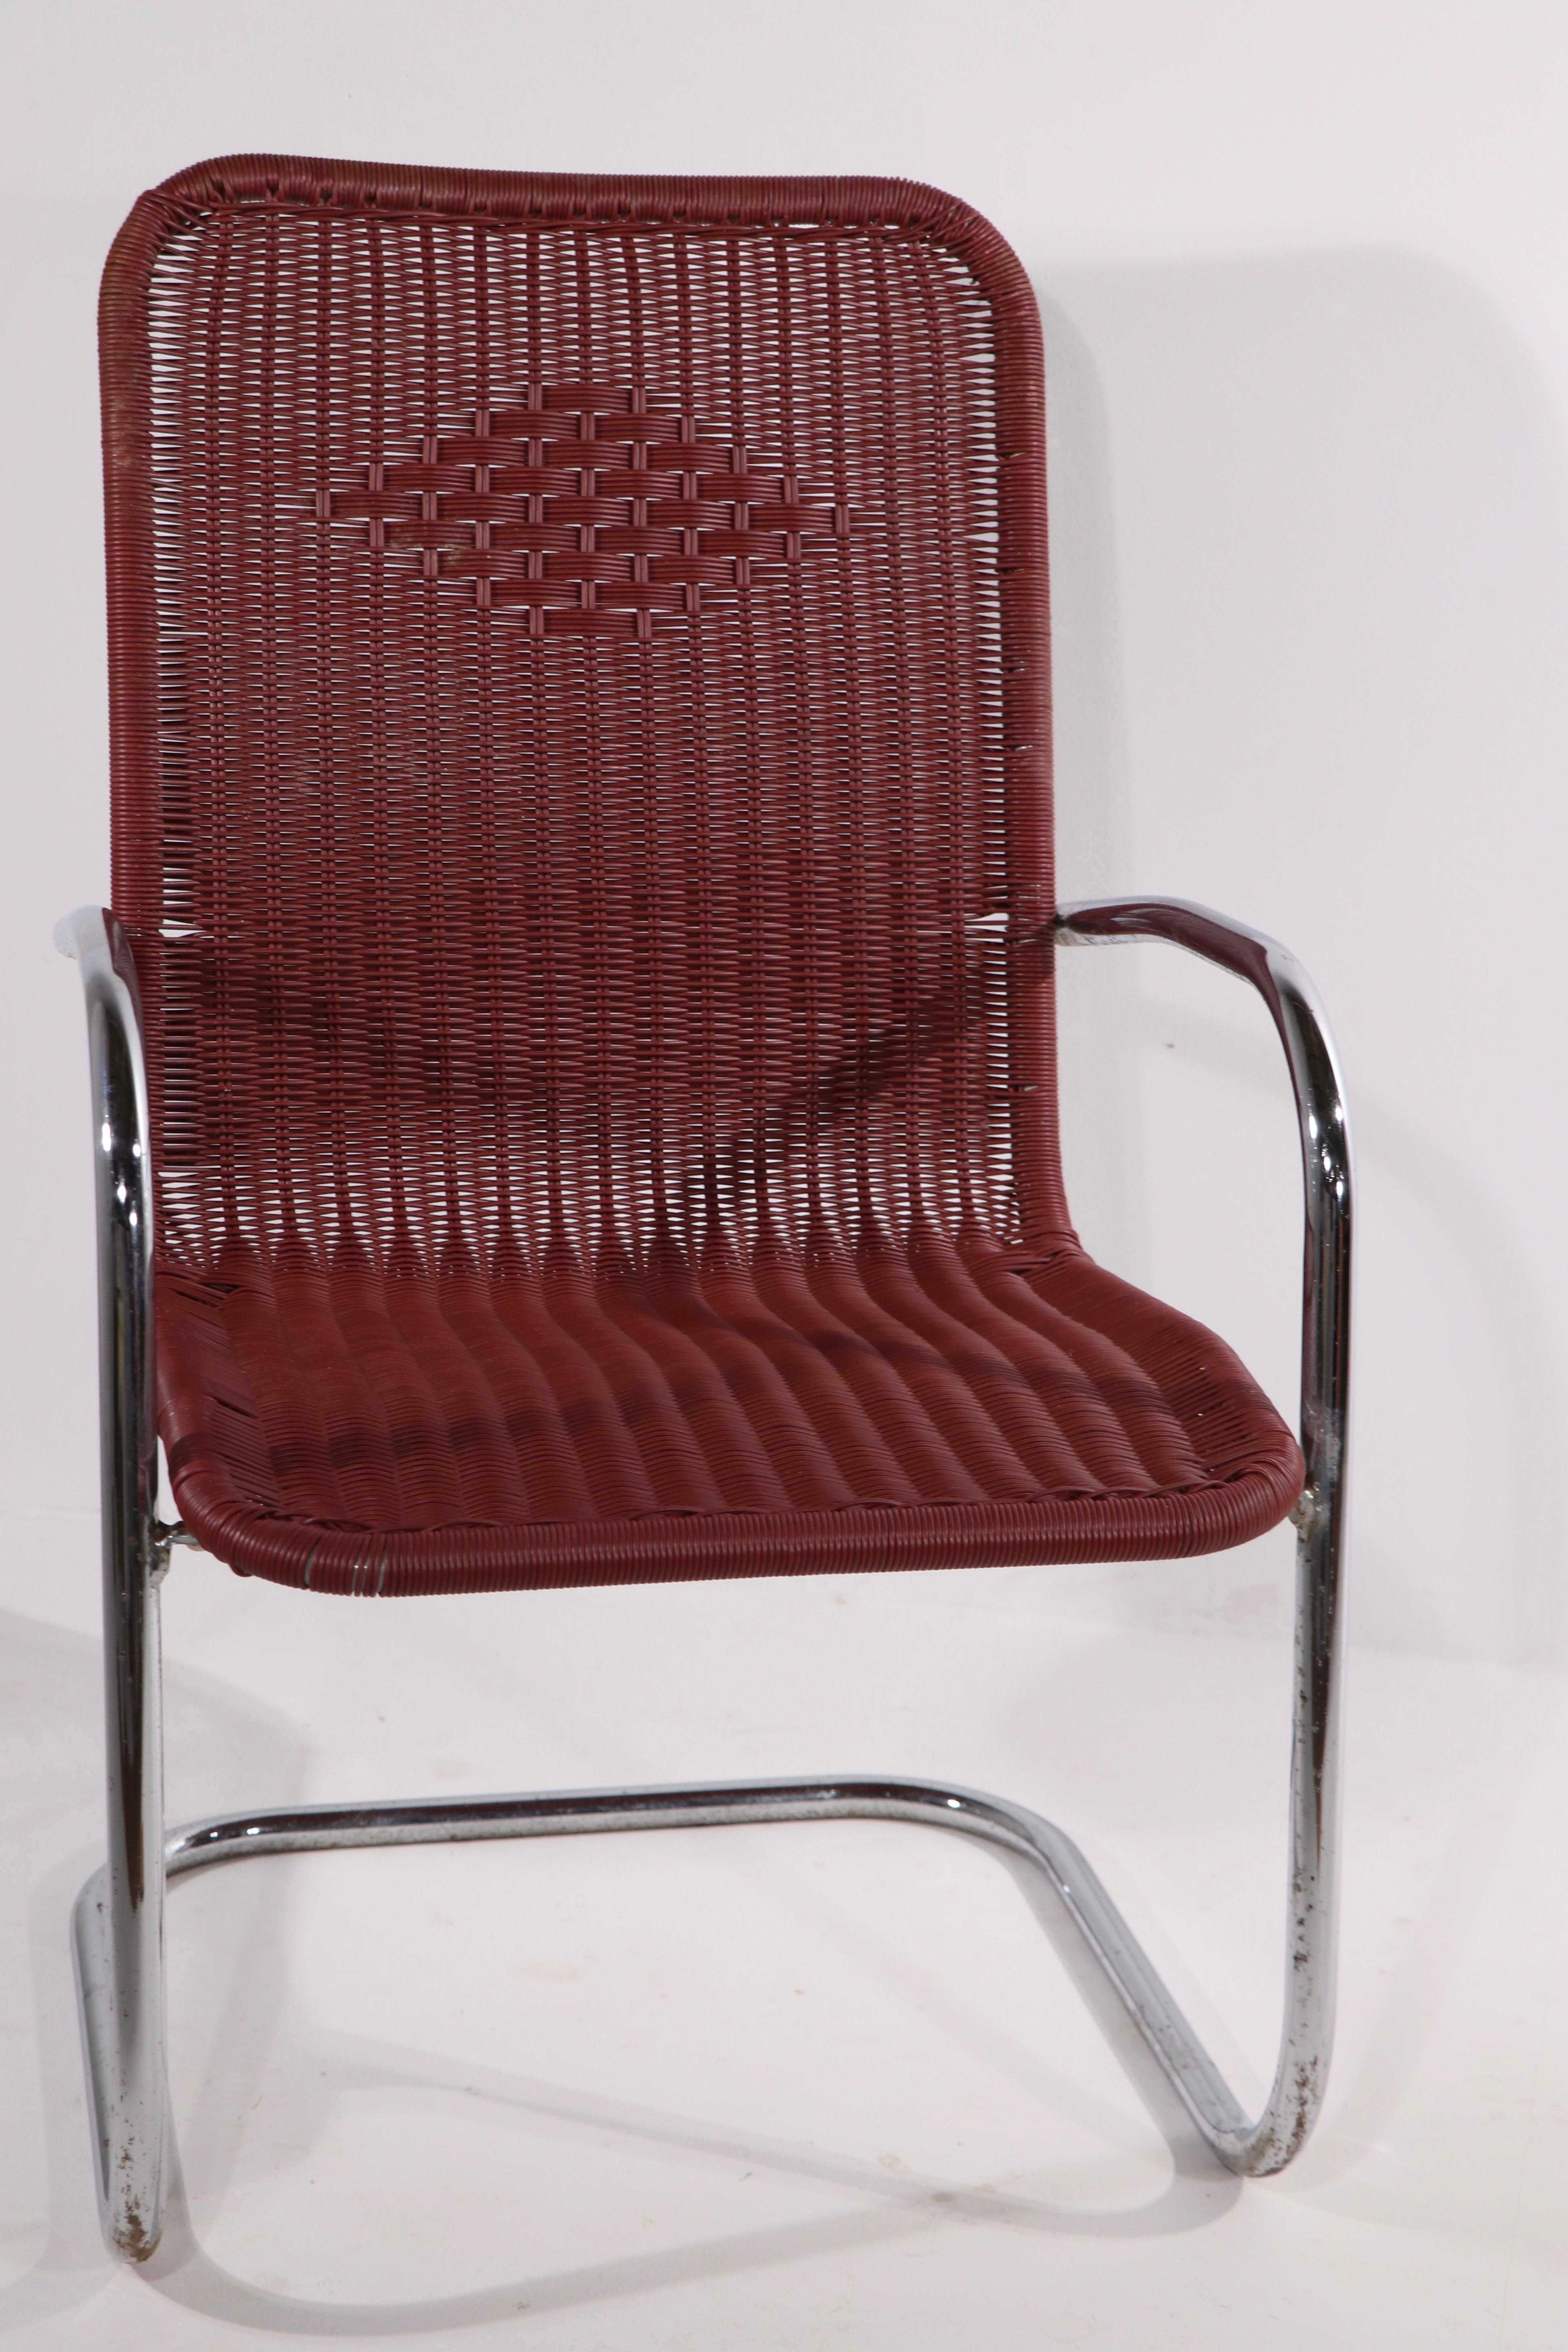 chrome tubular chair